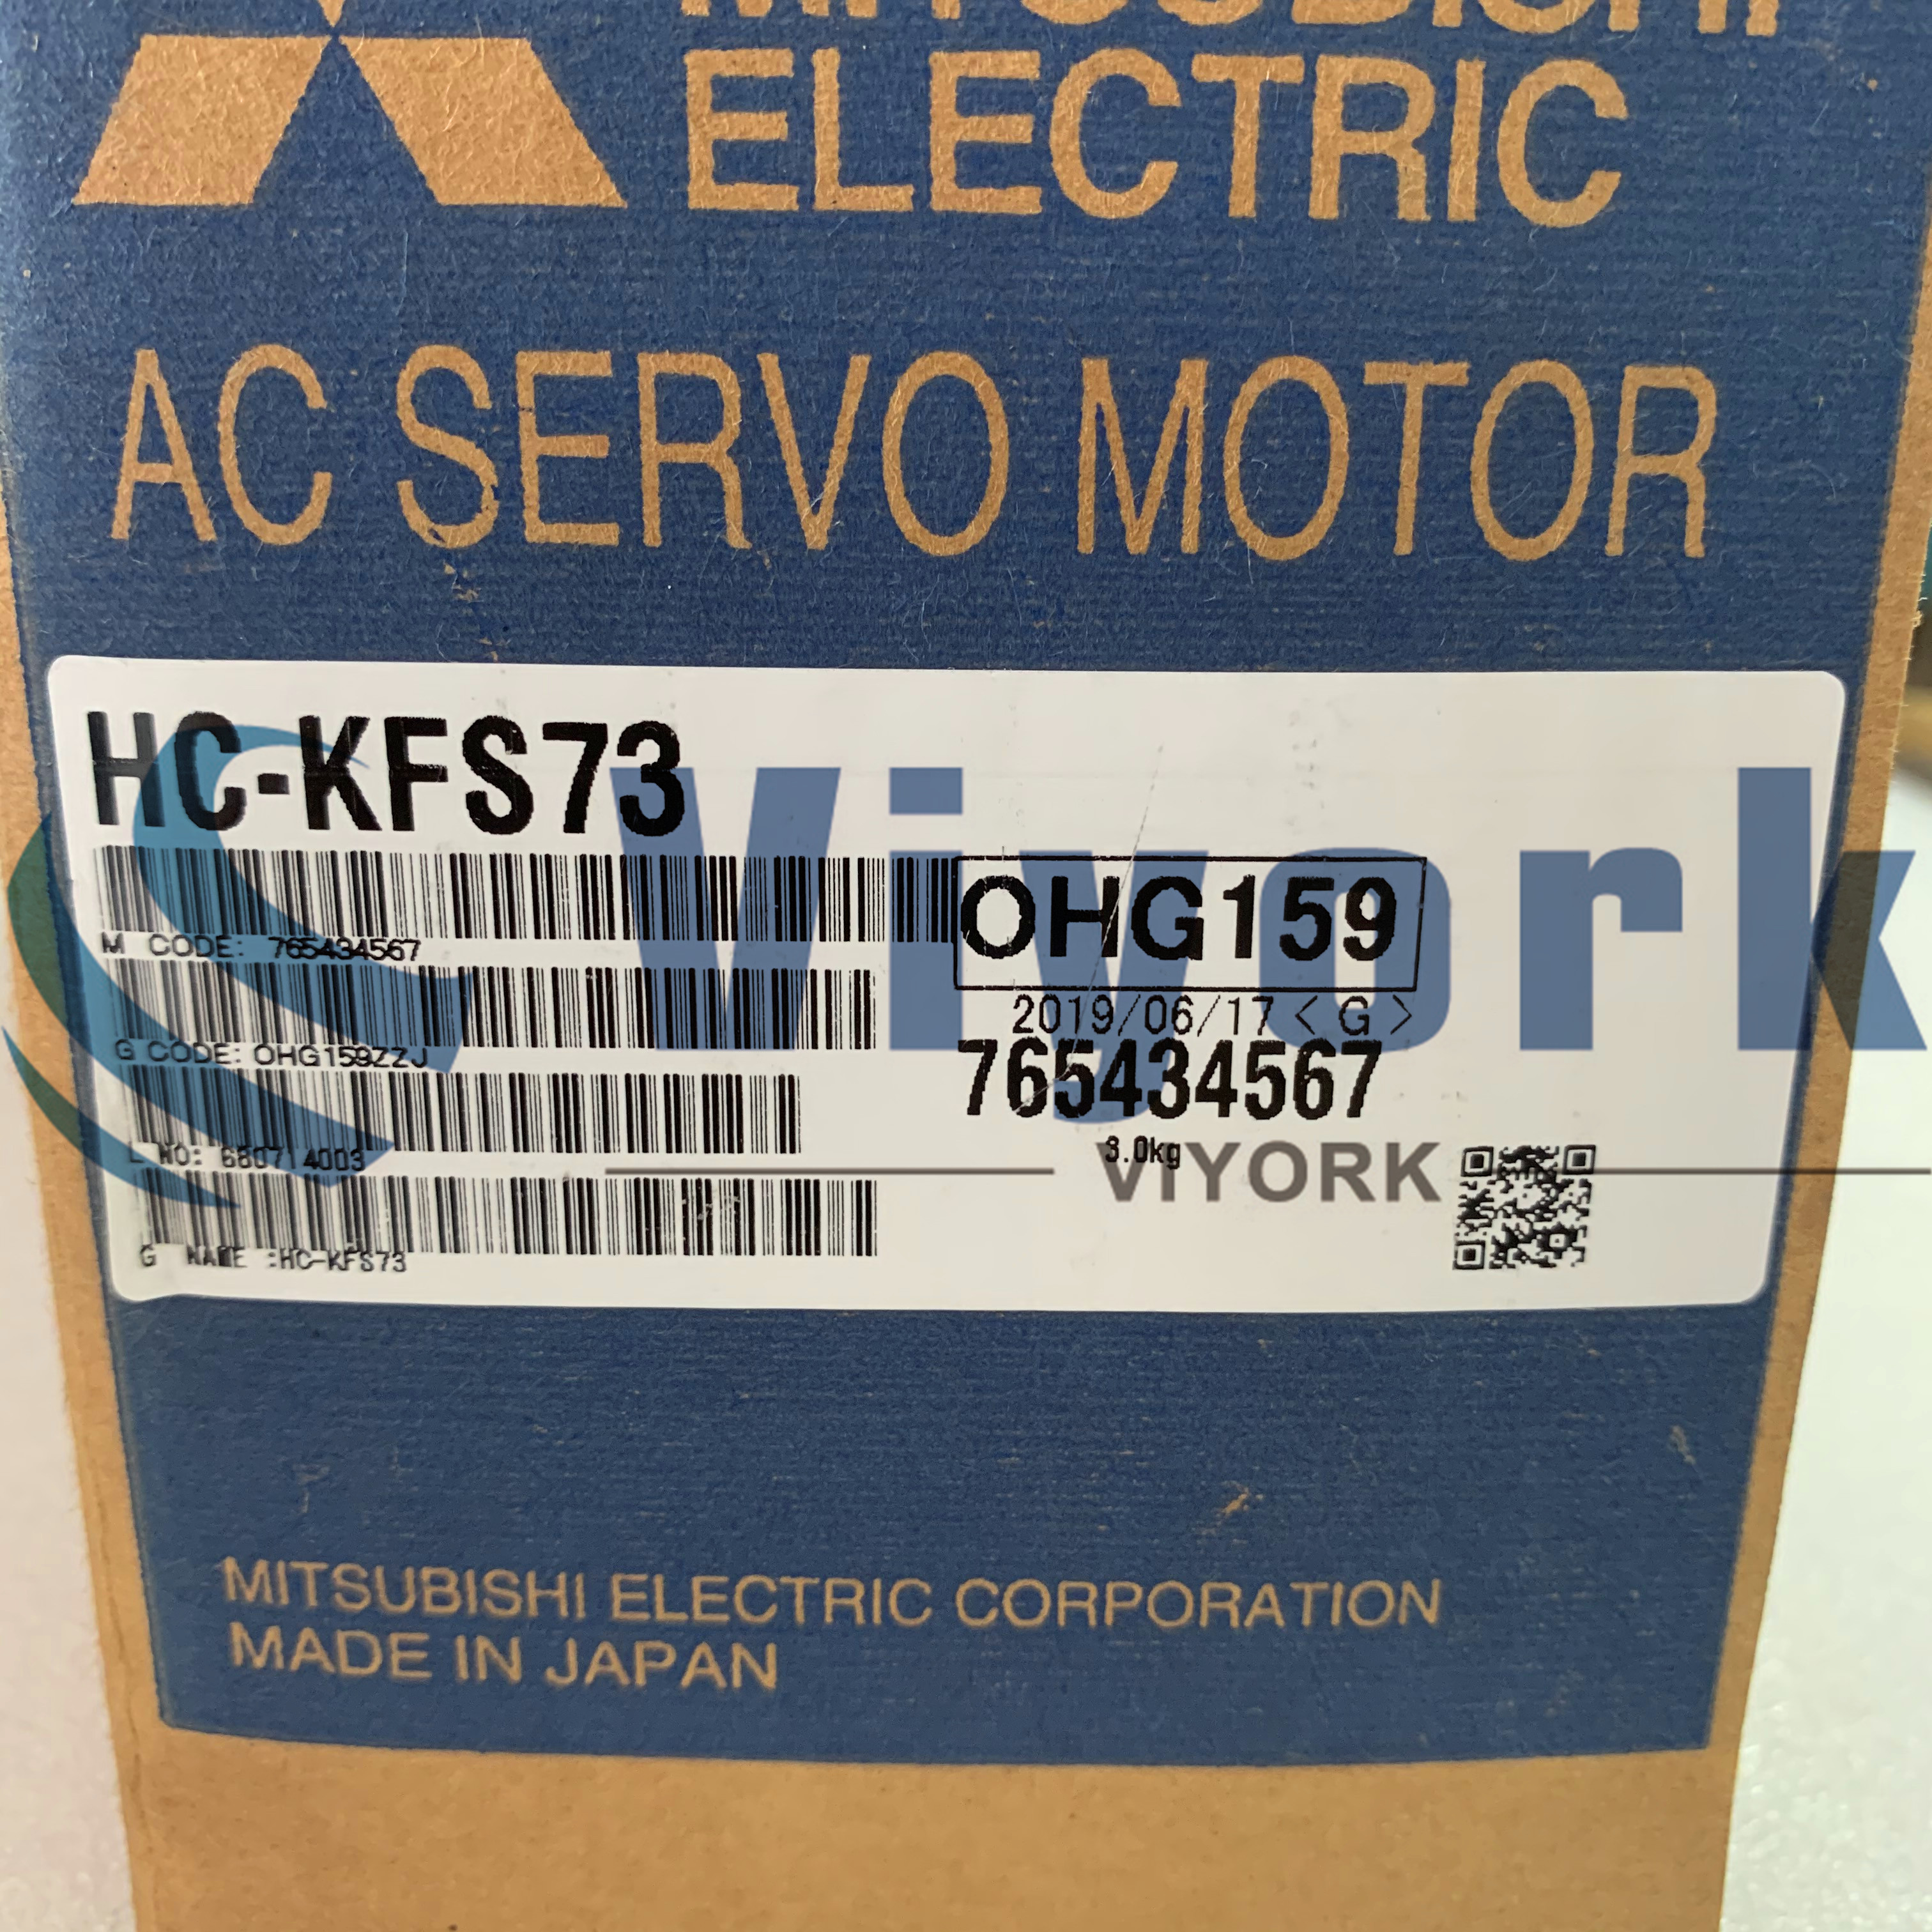 Mitsubishi HC-KFS73 AC SERVO MOTOR 5.6AMP 750W 103V NEW